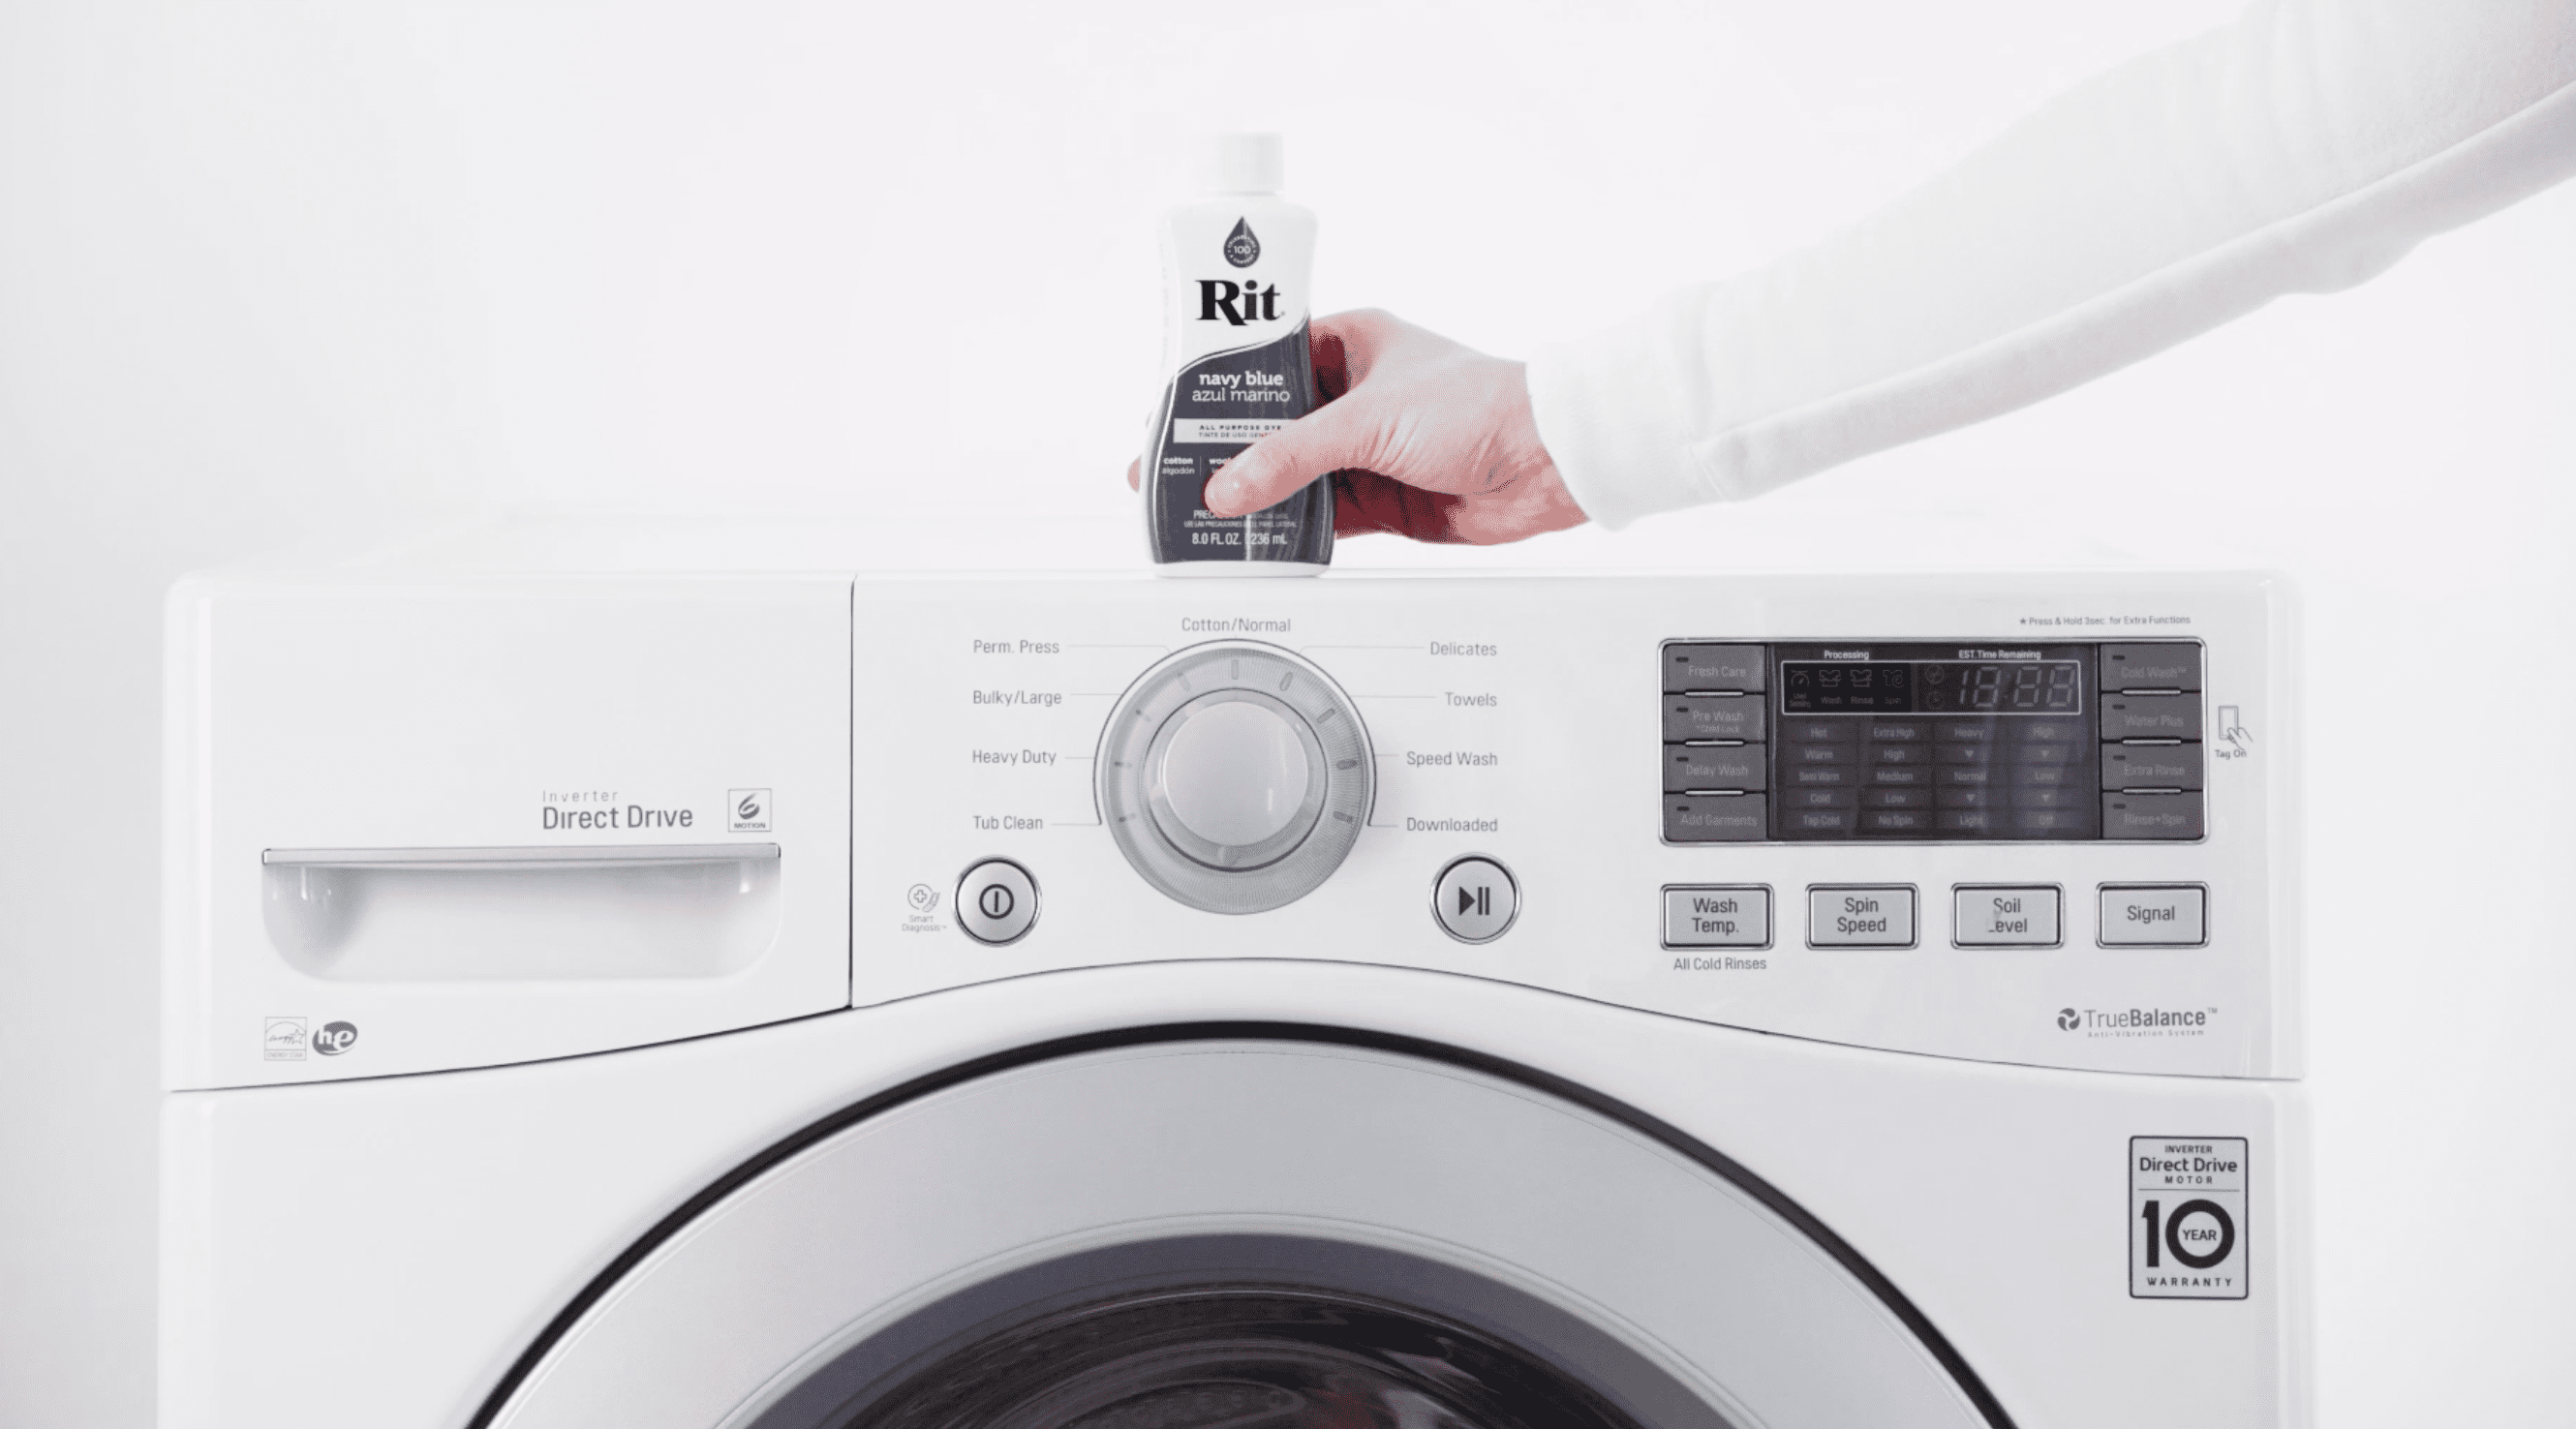 washing method in washing machine